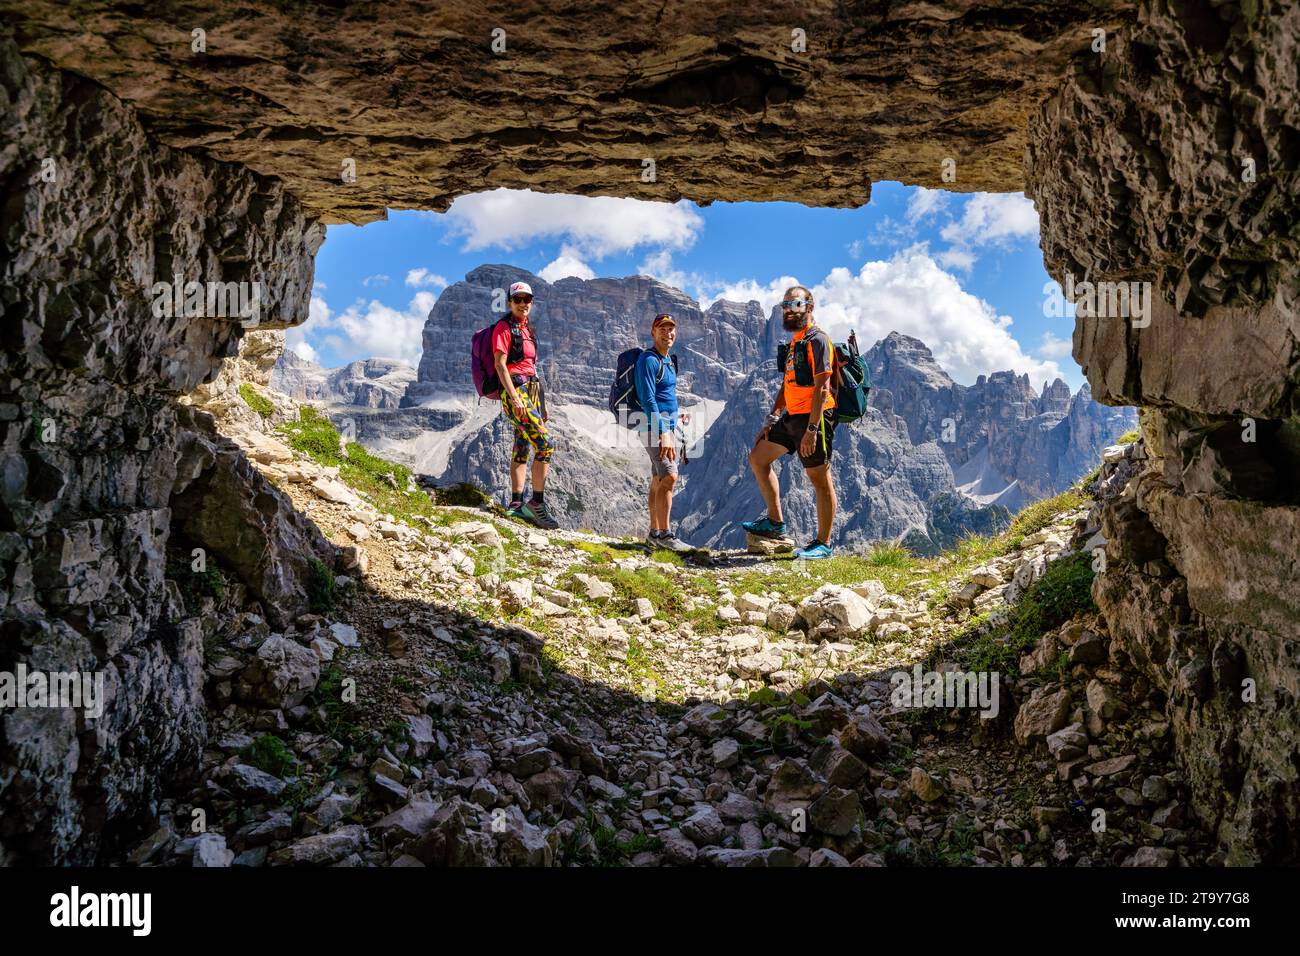 Hiking at Tre Cime Di Lavaredo, Auronzo di Cadore, Italy Stock Photo